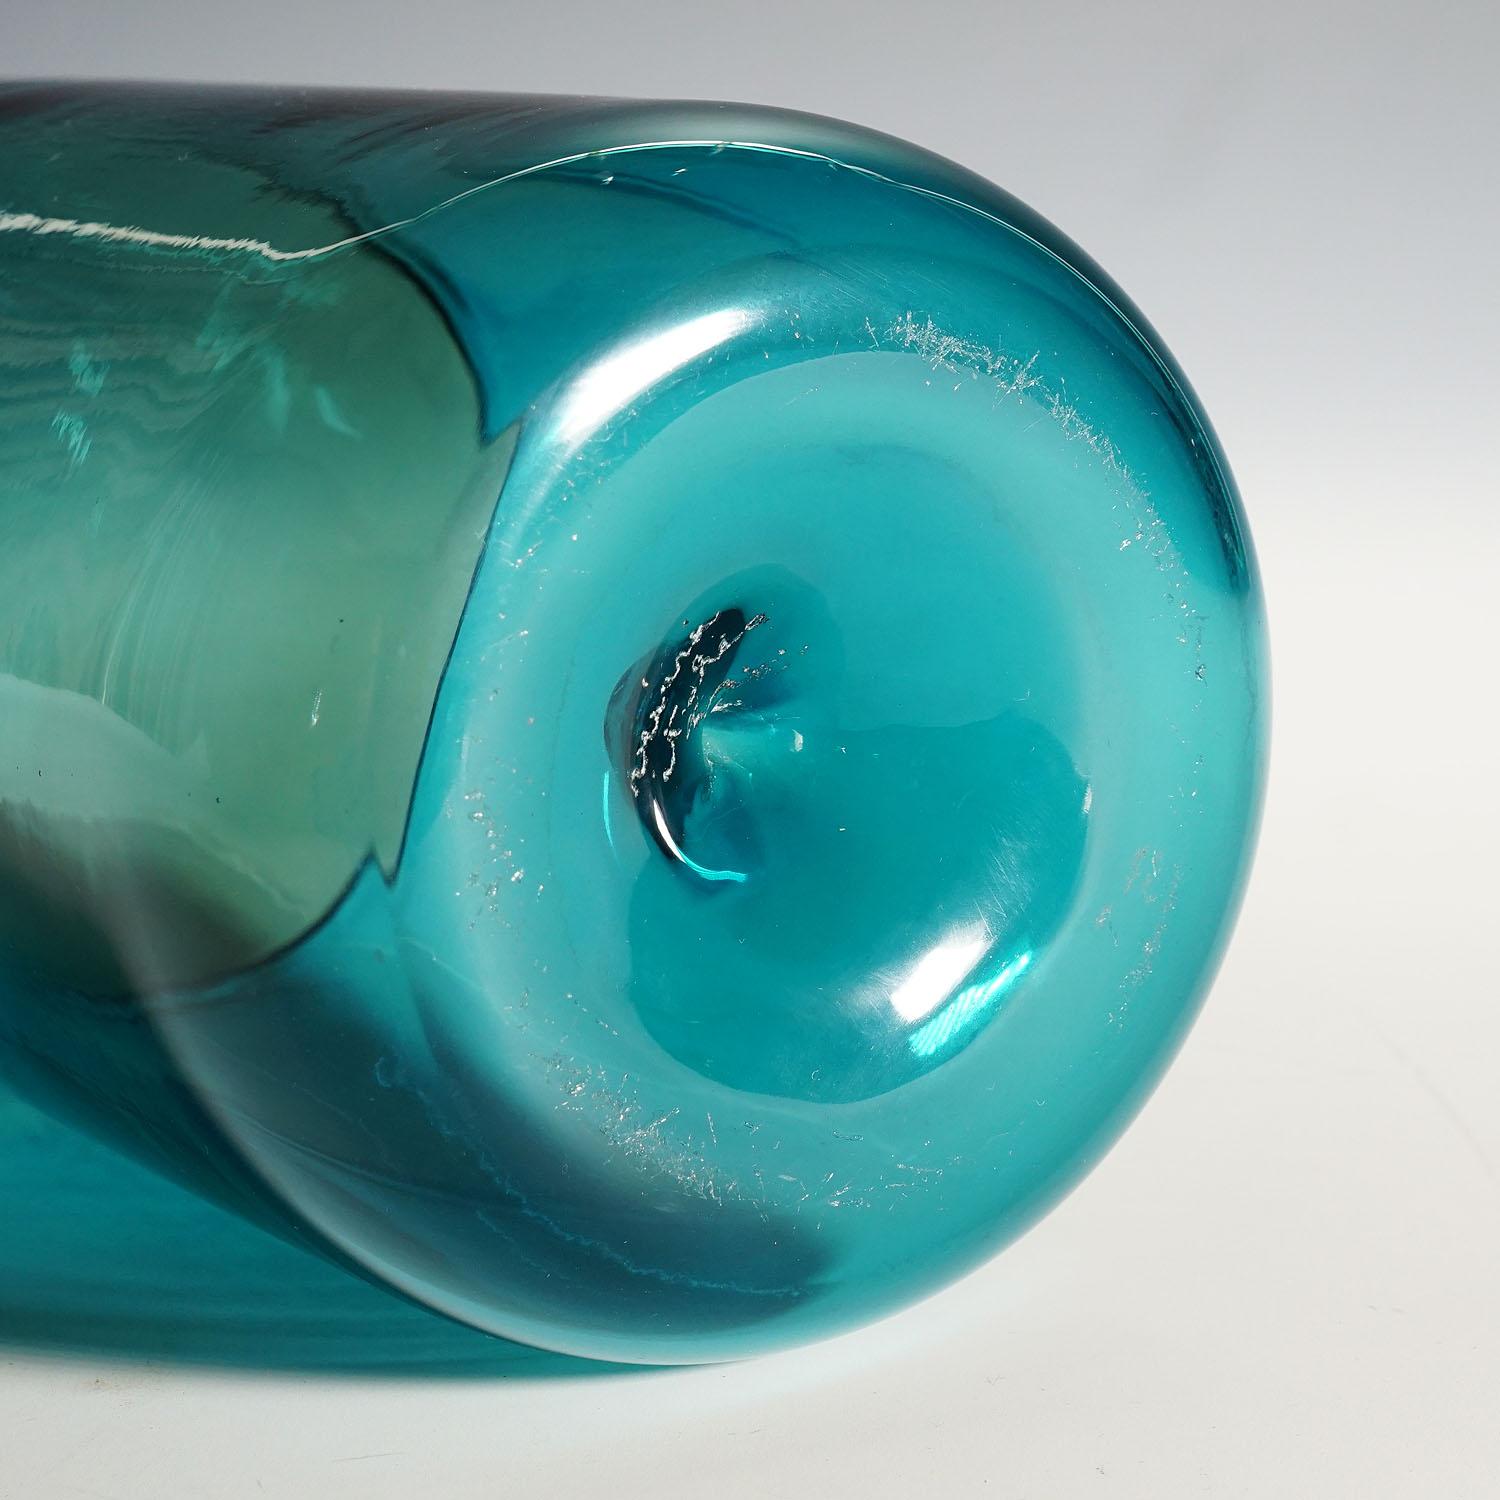 20th Century Venini Art Glass Vase 'Bolle' by Tapio Wirkkala for Venini, Murano, 1966 For Sale